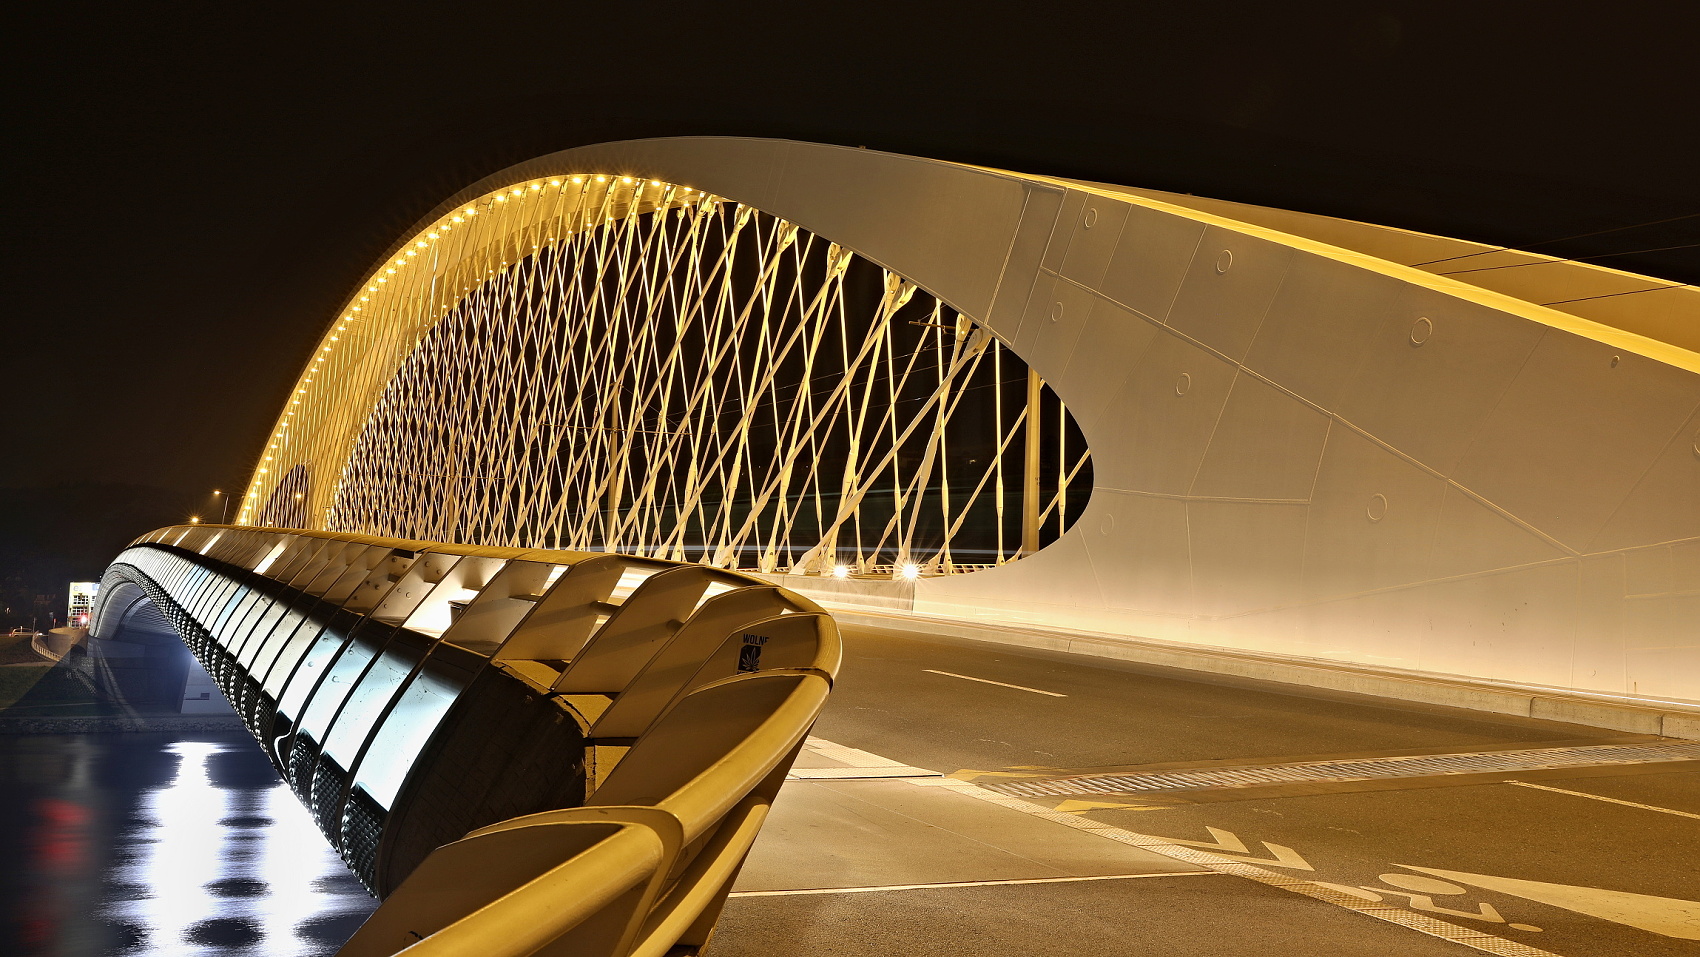 Noc na Trojském mostě